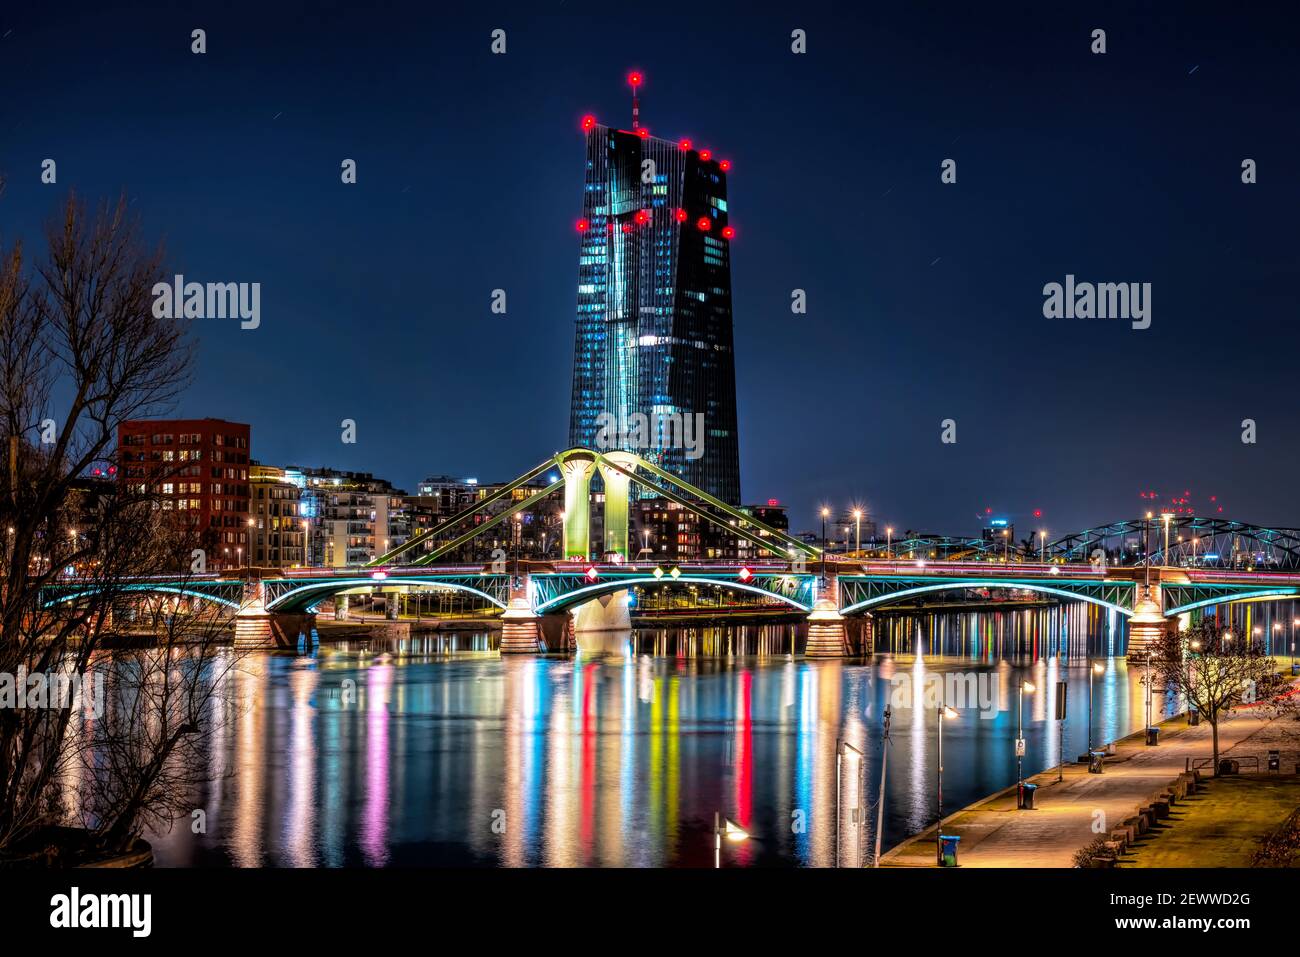 Vue de nuit sur l'Europäische Zentralbank (EZB) avec ponts illuminés à Francfort-sur-le-main, Allemagne Banque D'Images